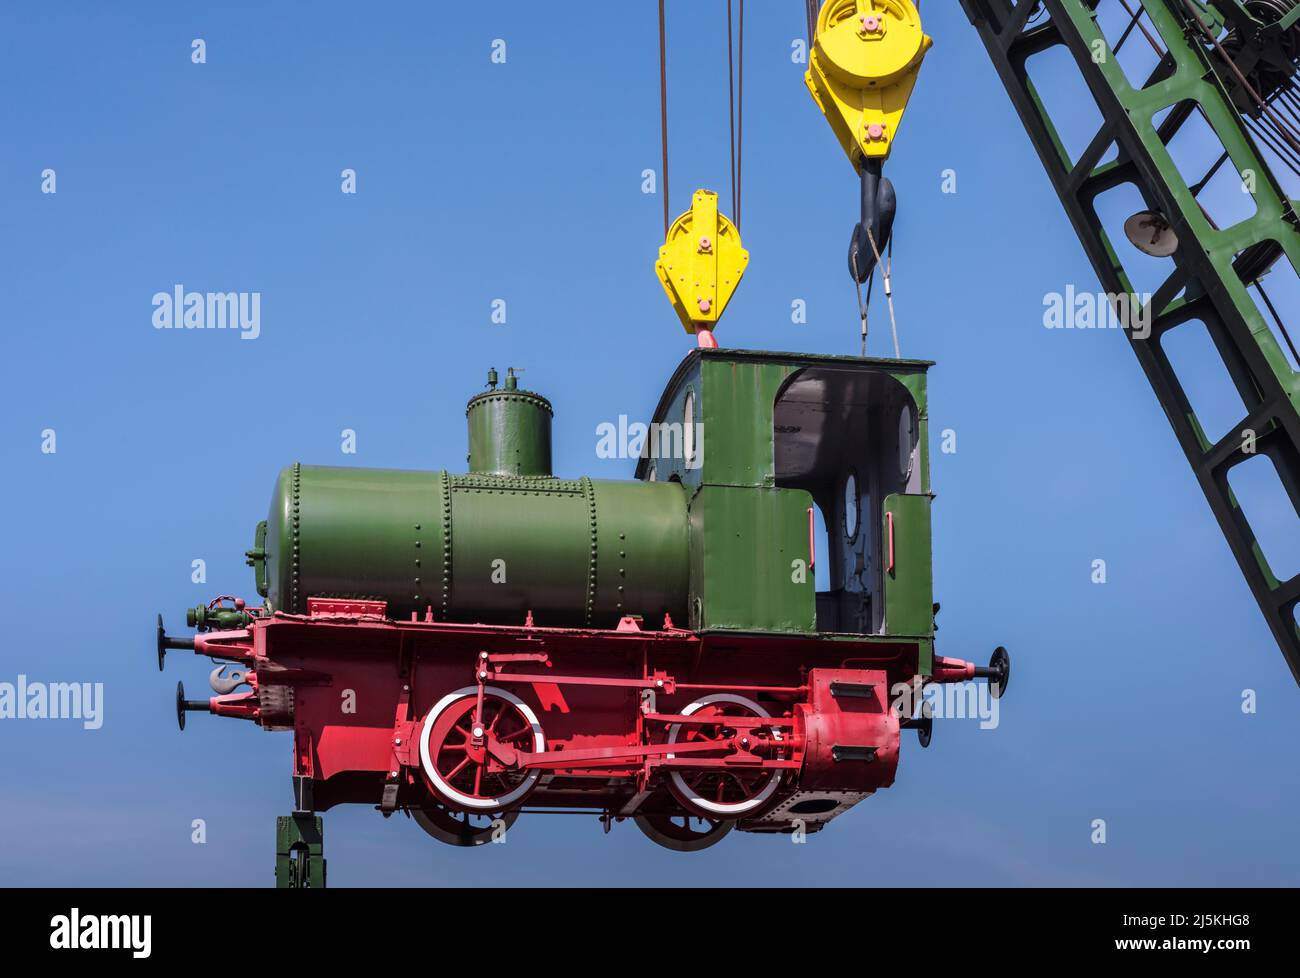 Niedliche kleine grüne nostalgische Dampfeisenbahn, die in der Luft auf einem Kranwagen hängt, blauer skye und Kopierraum, Deutschland Stockfoto